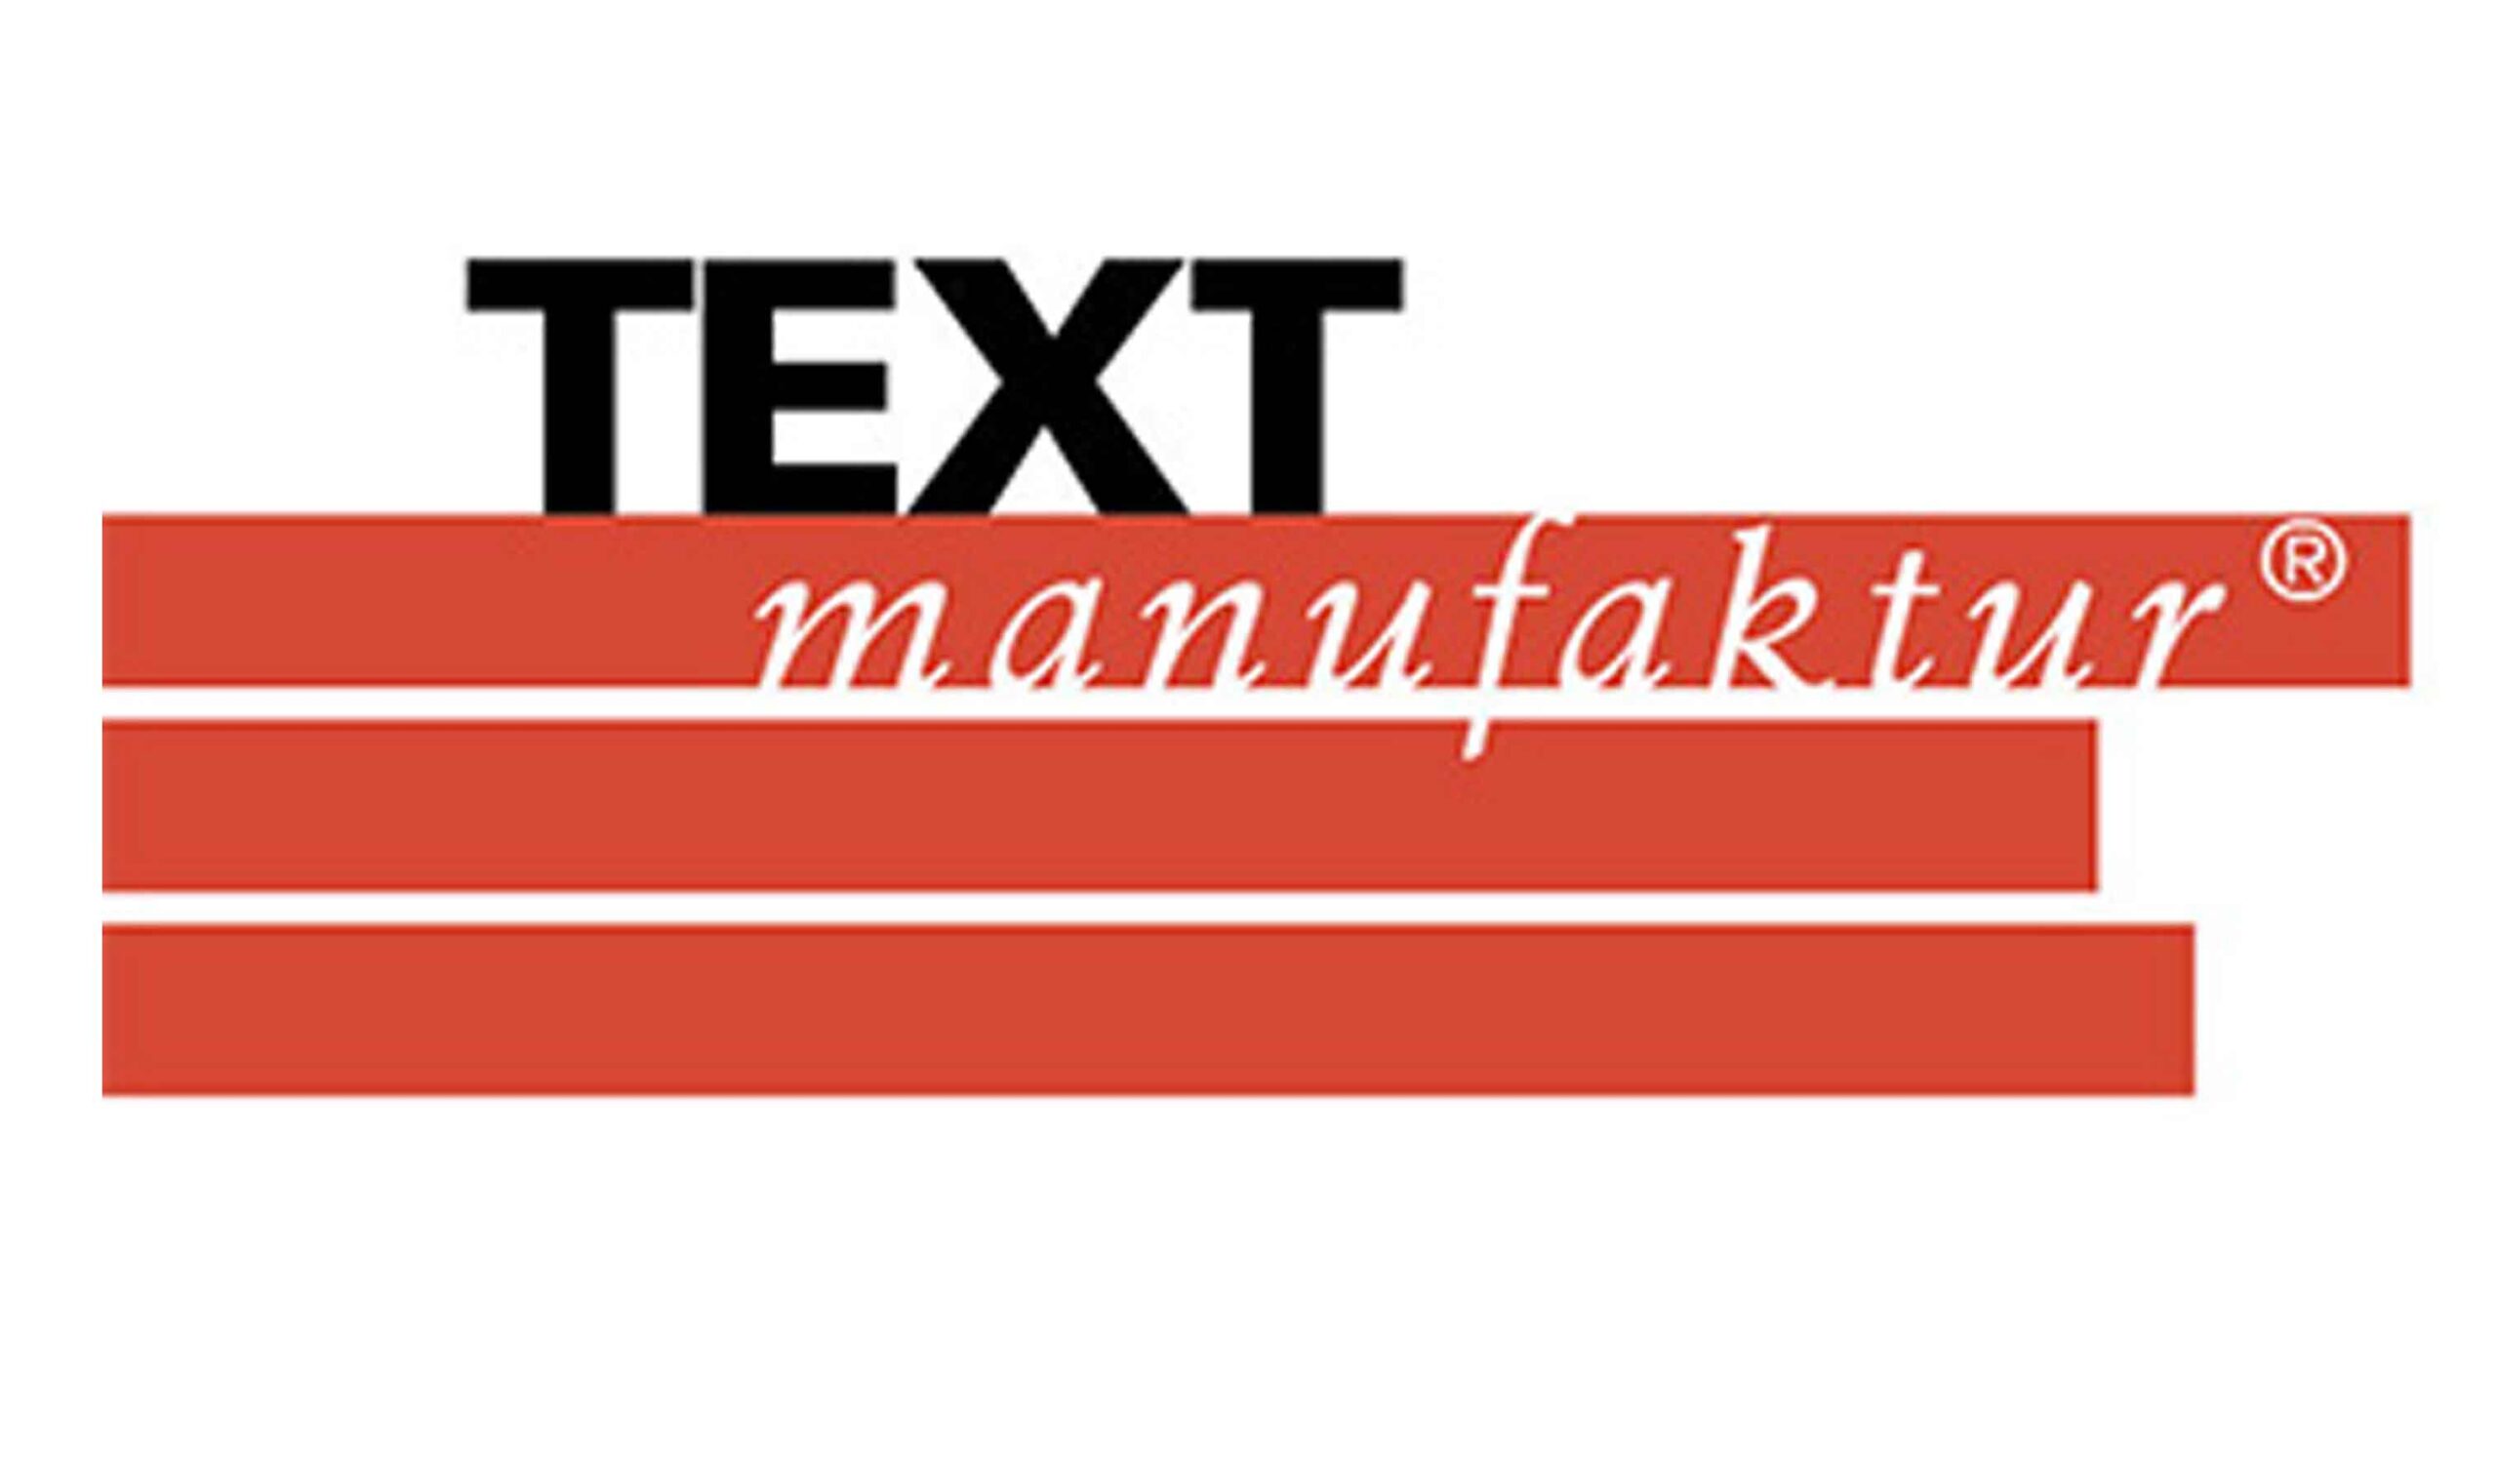 I teach online in German at Text-Manufaktur.de